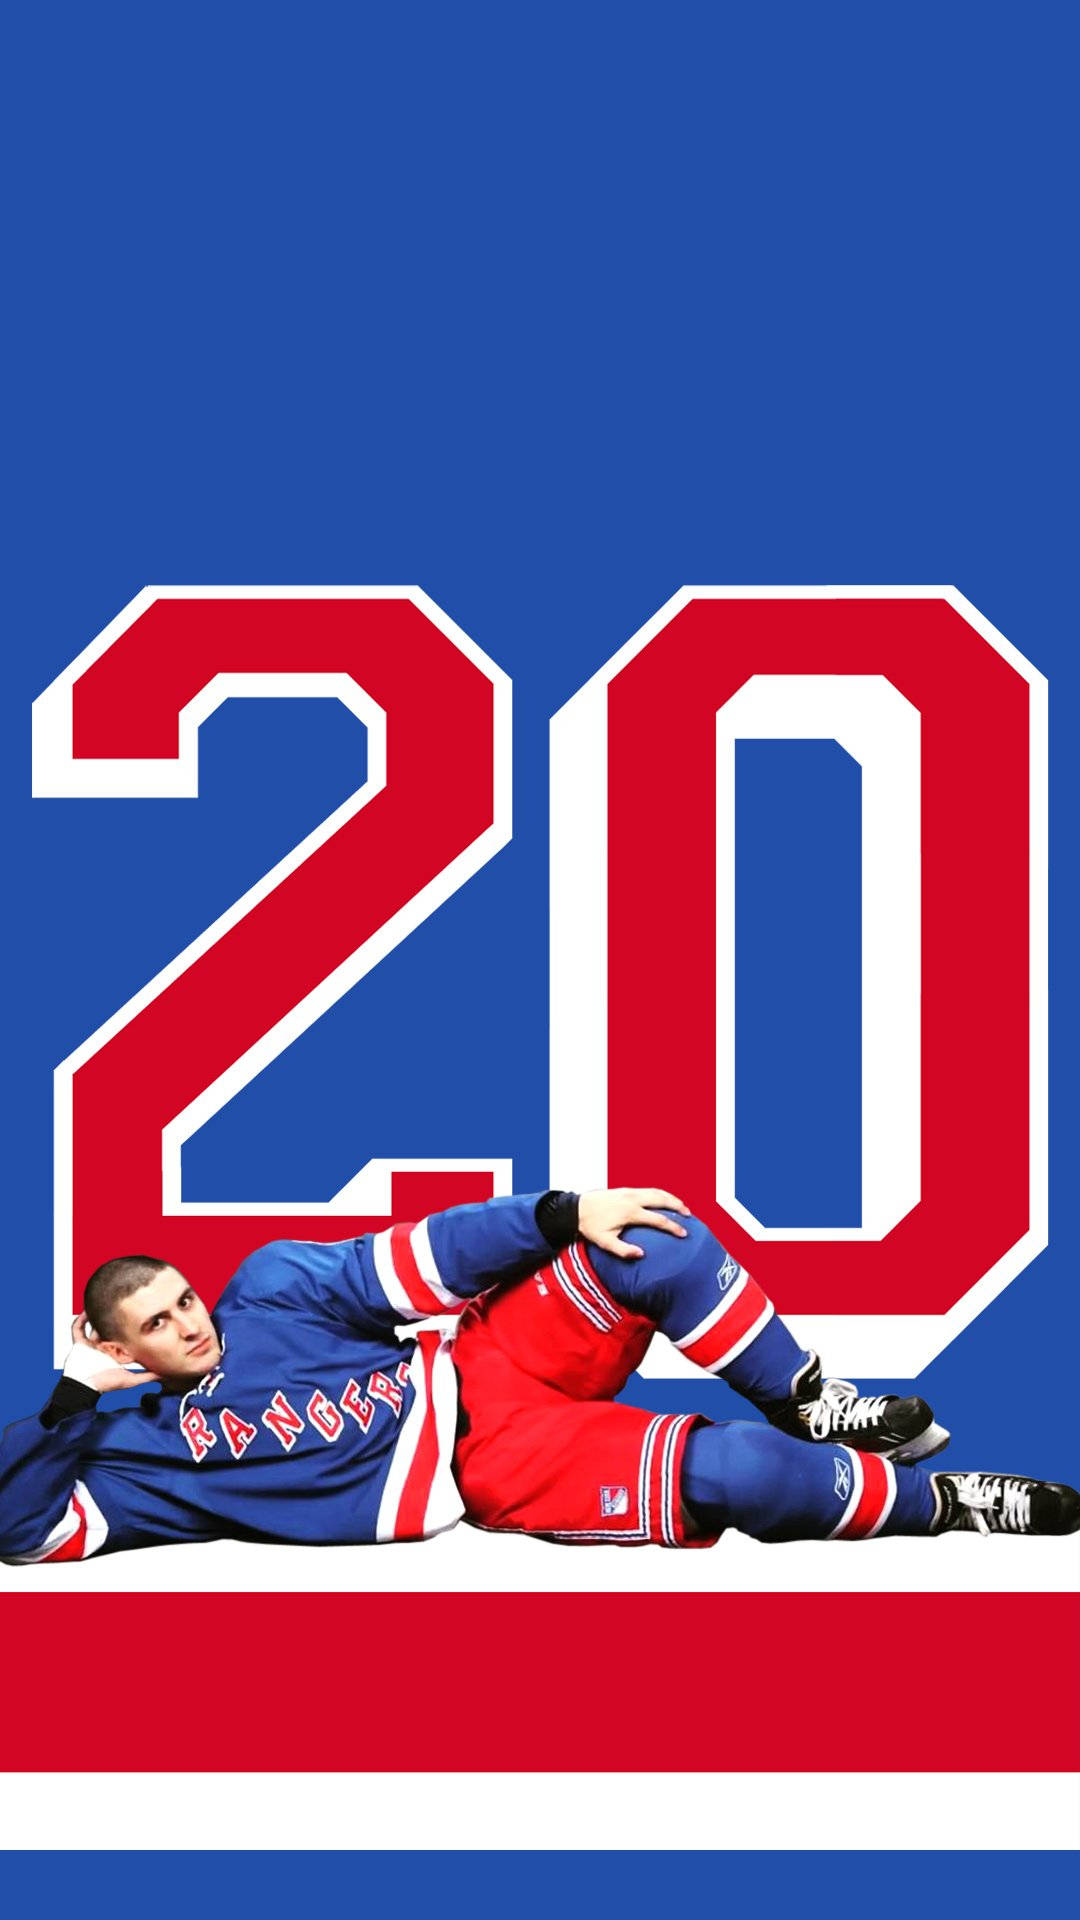 Chris Kreider New York Rangers professionel ishockey spiller Fototapet Wallpaper